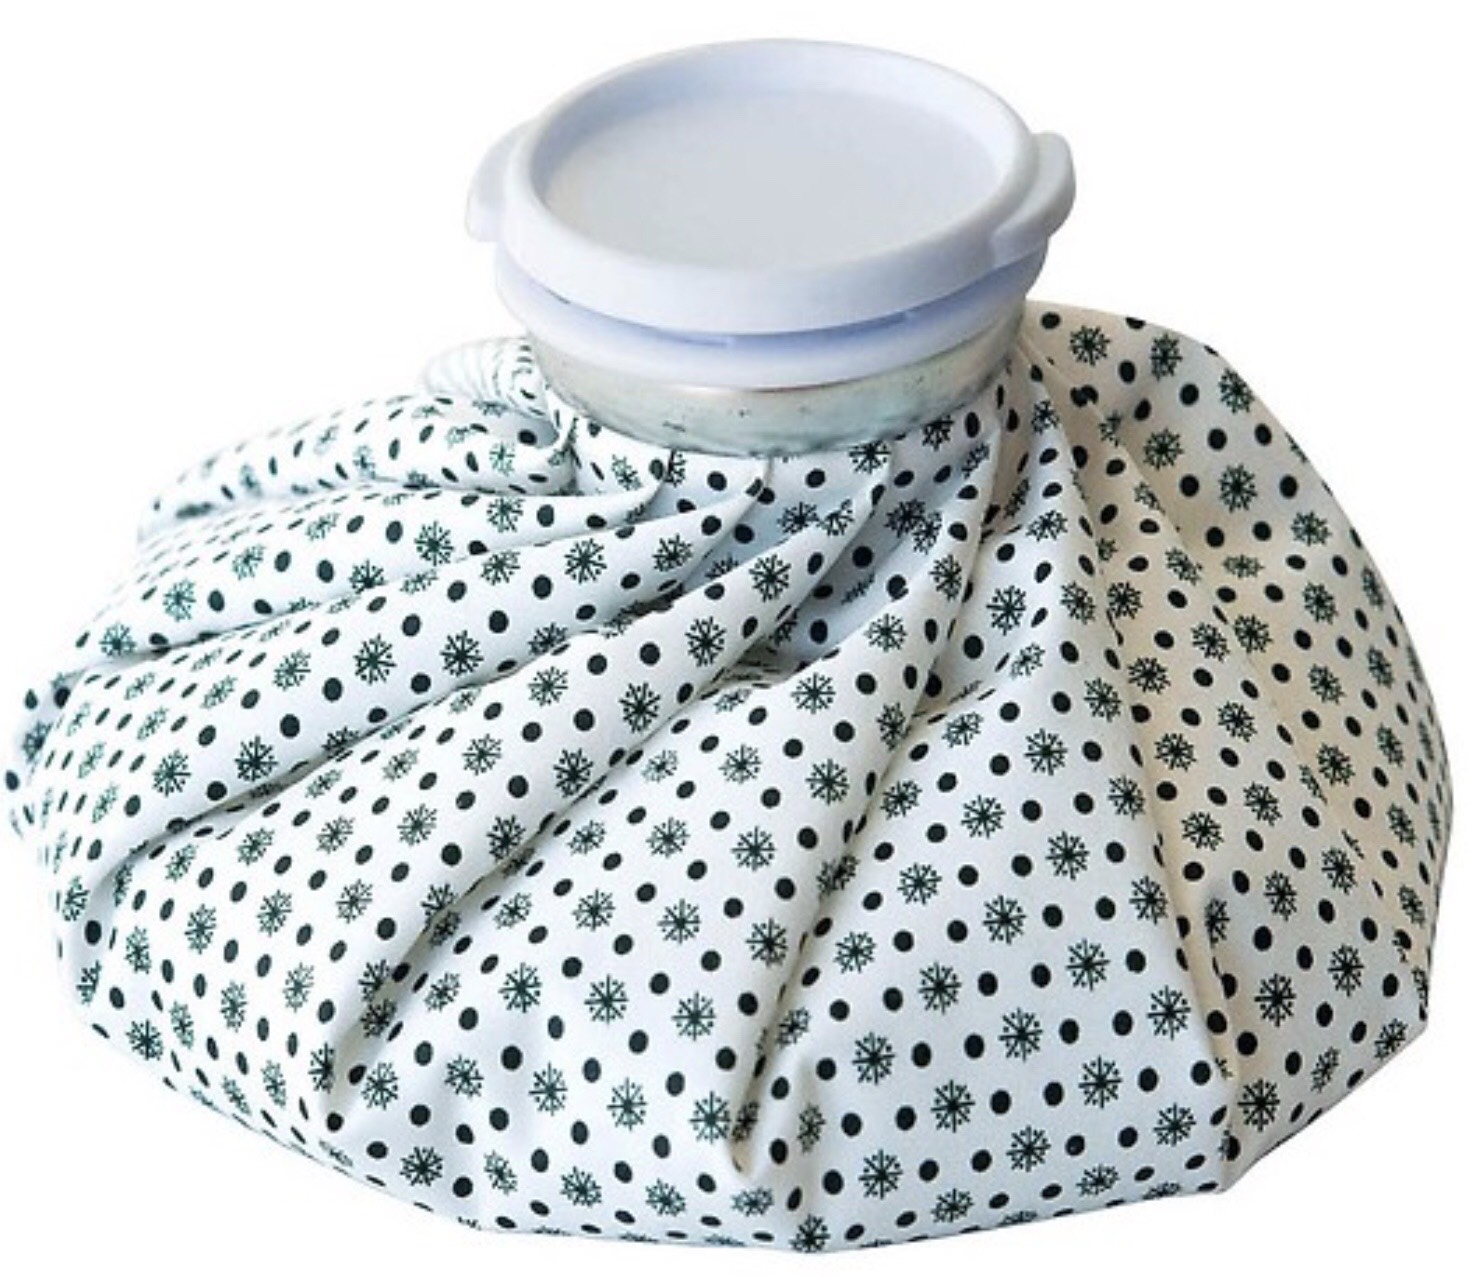 Túi chườm nóng lạnh vải giúp giảm đau hỗ trợ chấn thương là sản phẩm vô cùng hữu ích đối với mọi nhà